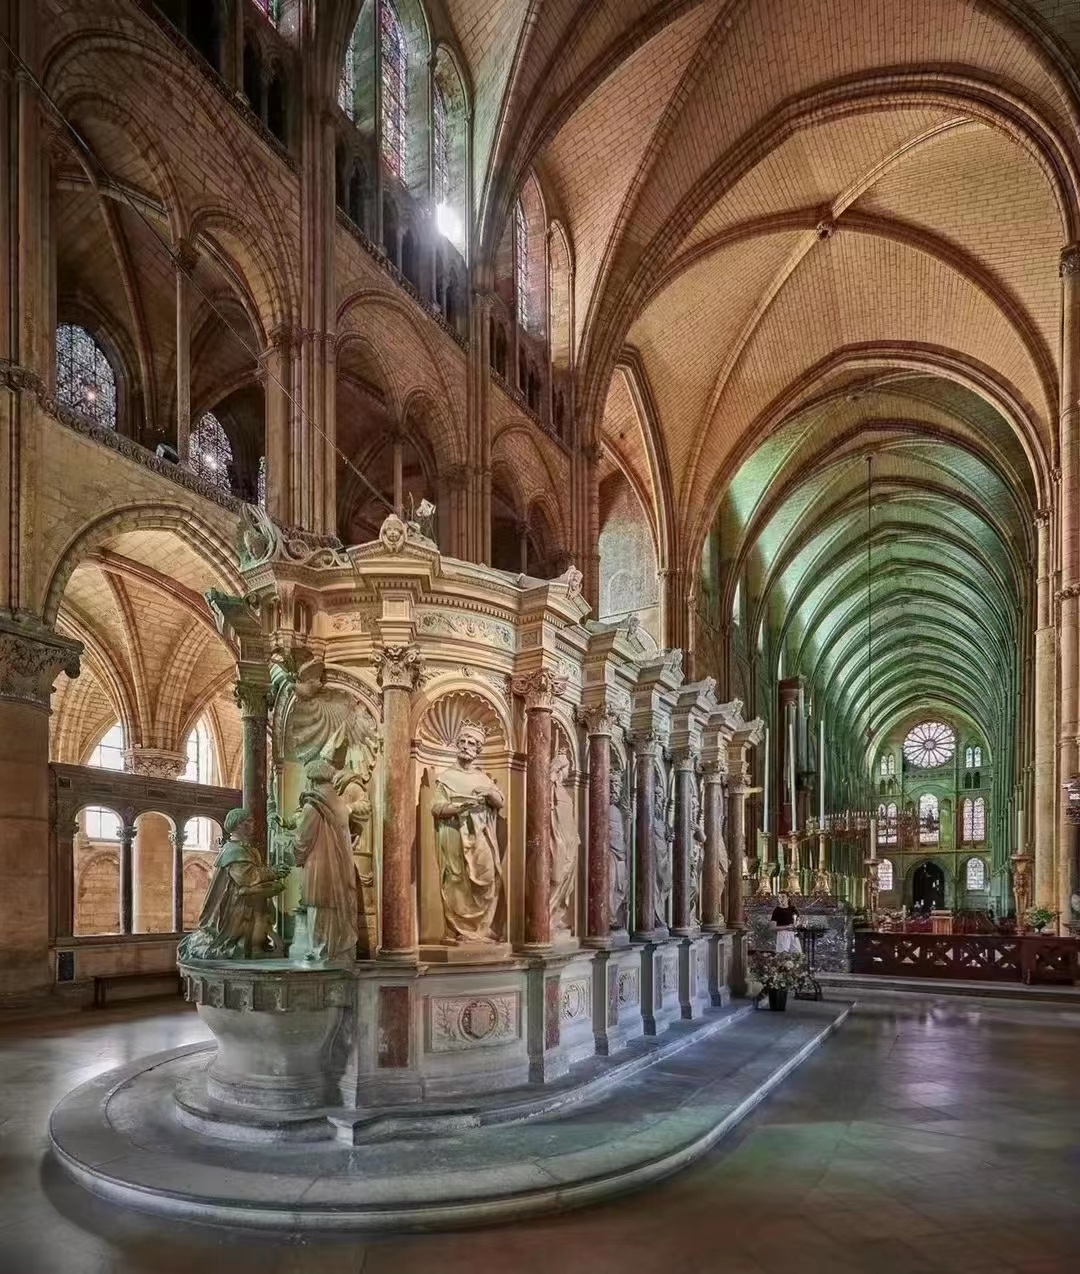 圣雷米大教堂，位于🇫🇷法国兰斯，建于11世纪，被列为联合国教科文组织世界遗产。罗曼式中殿，12世纪的